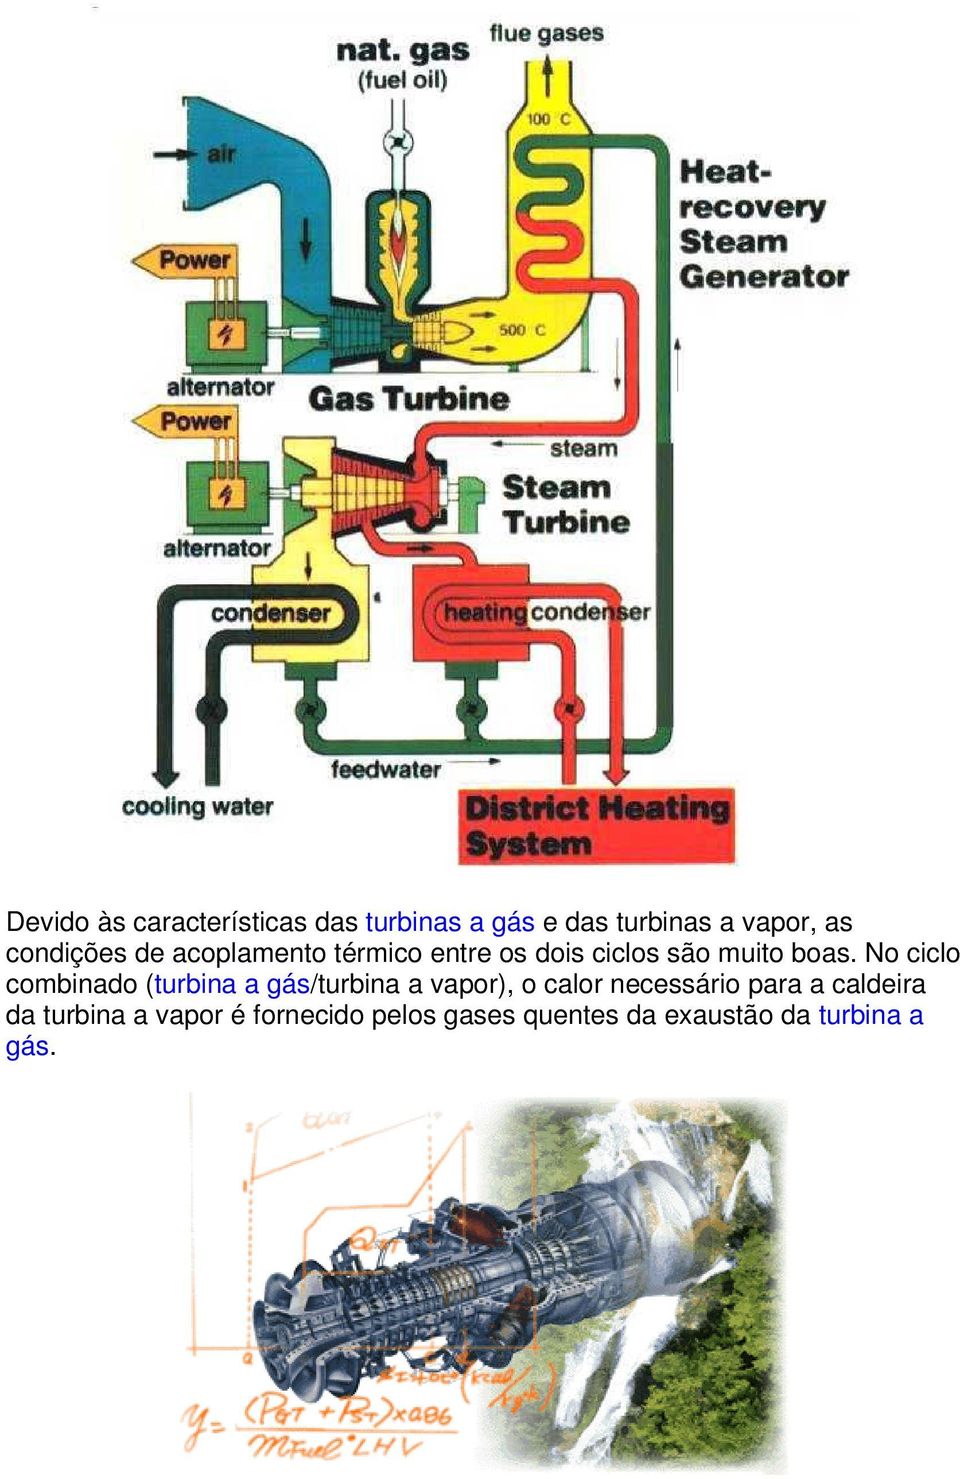 No ciclo combinado (turbina a gás/turbina a vapor), o calor necessário para a